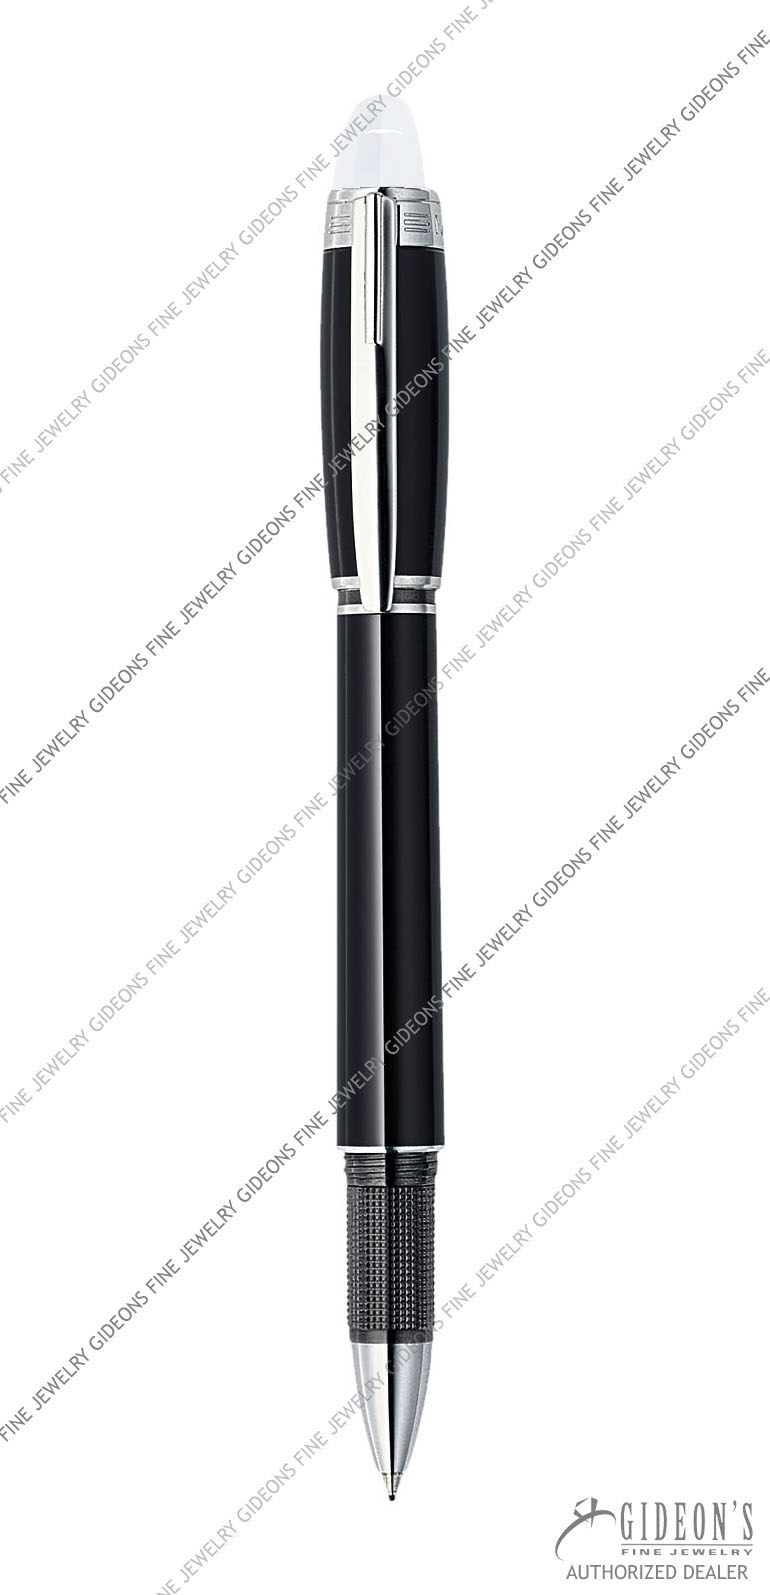 MontBlanc Max Von Oppenheim 104218 Limited Edition Fountain Pen